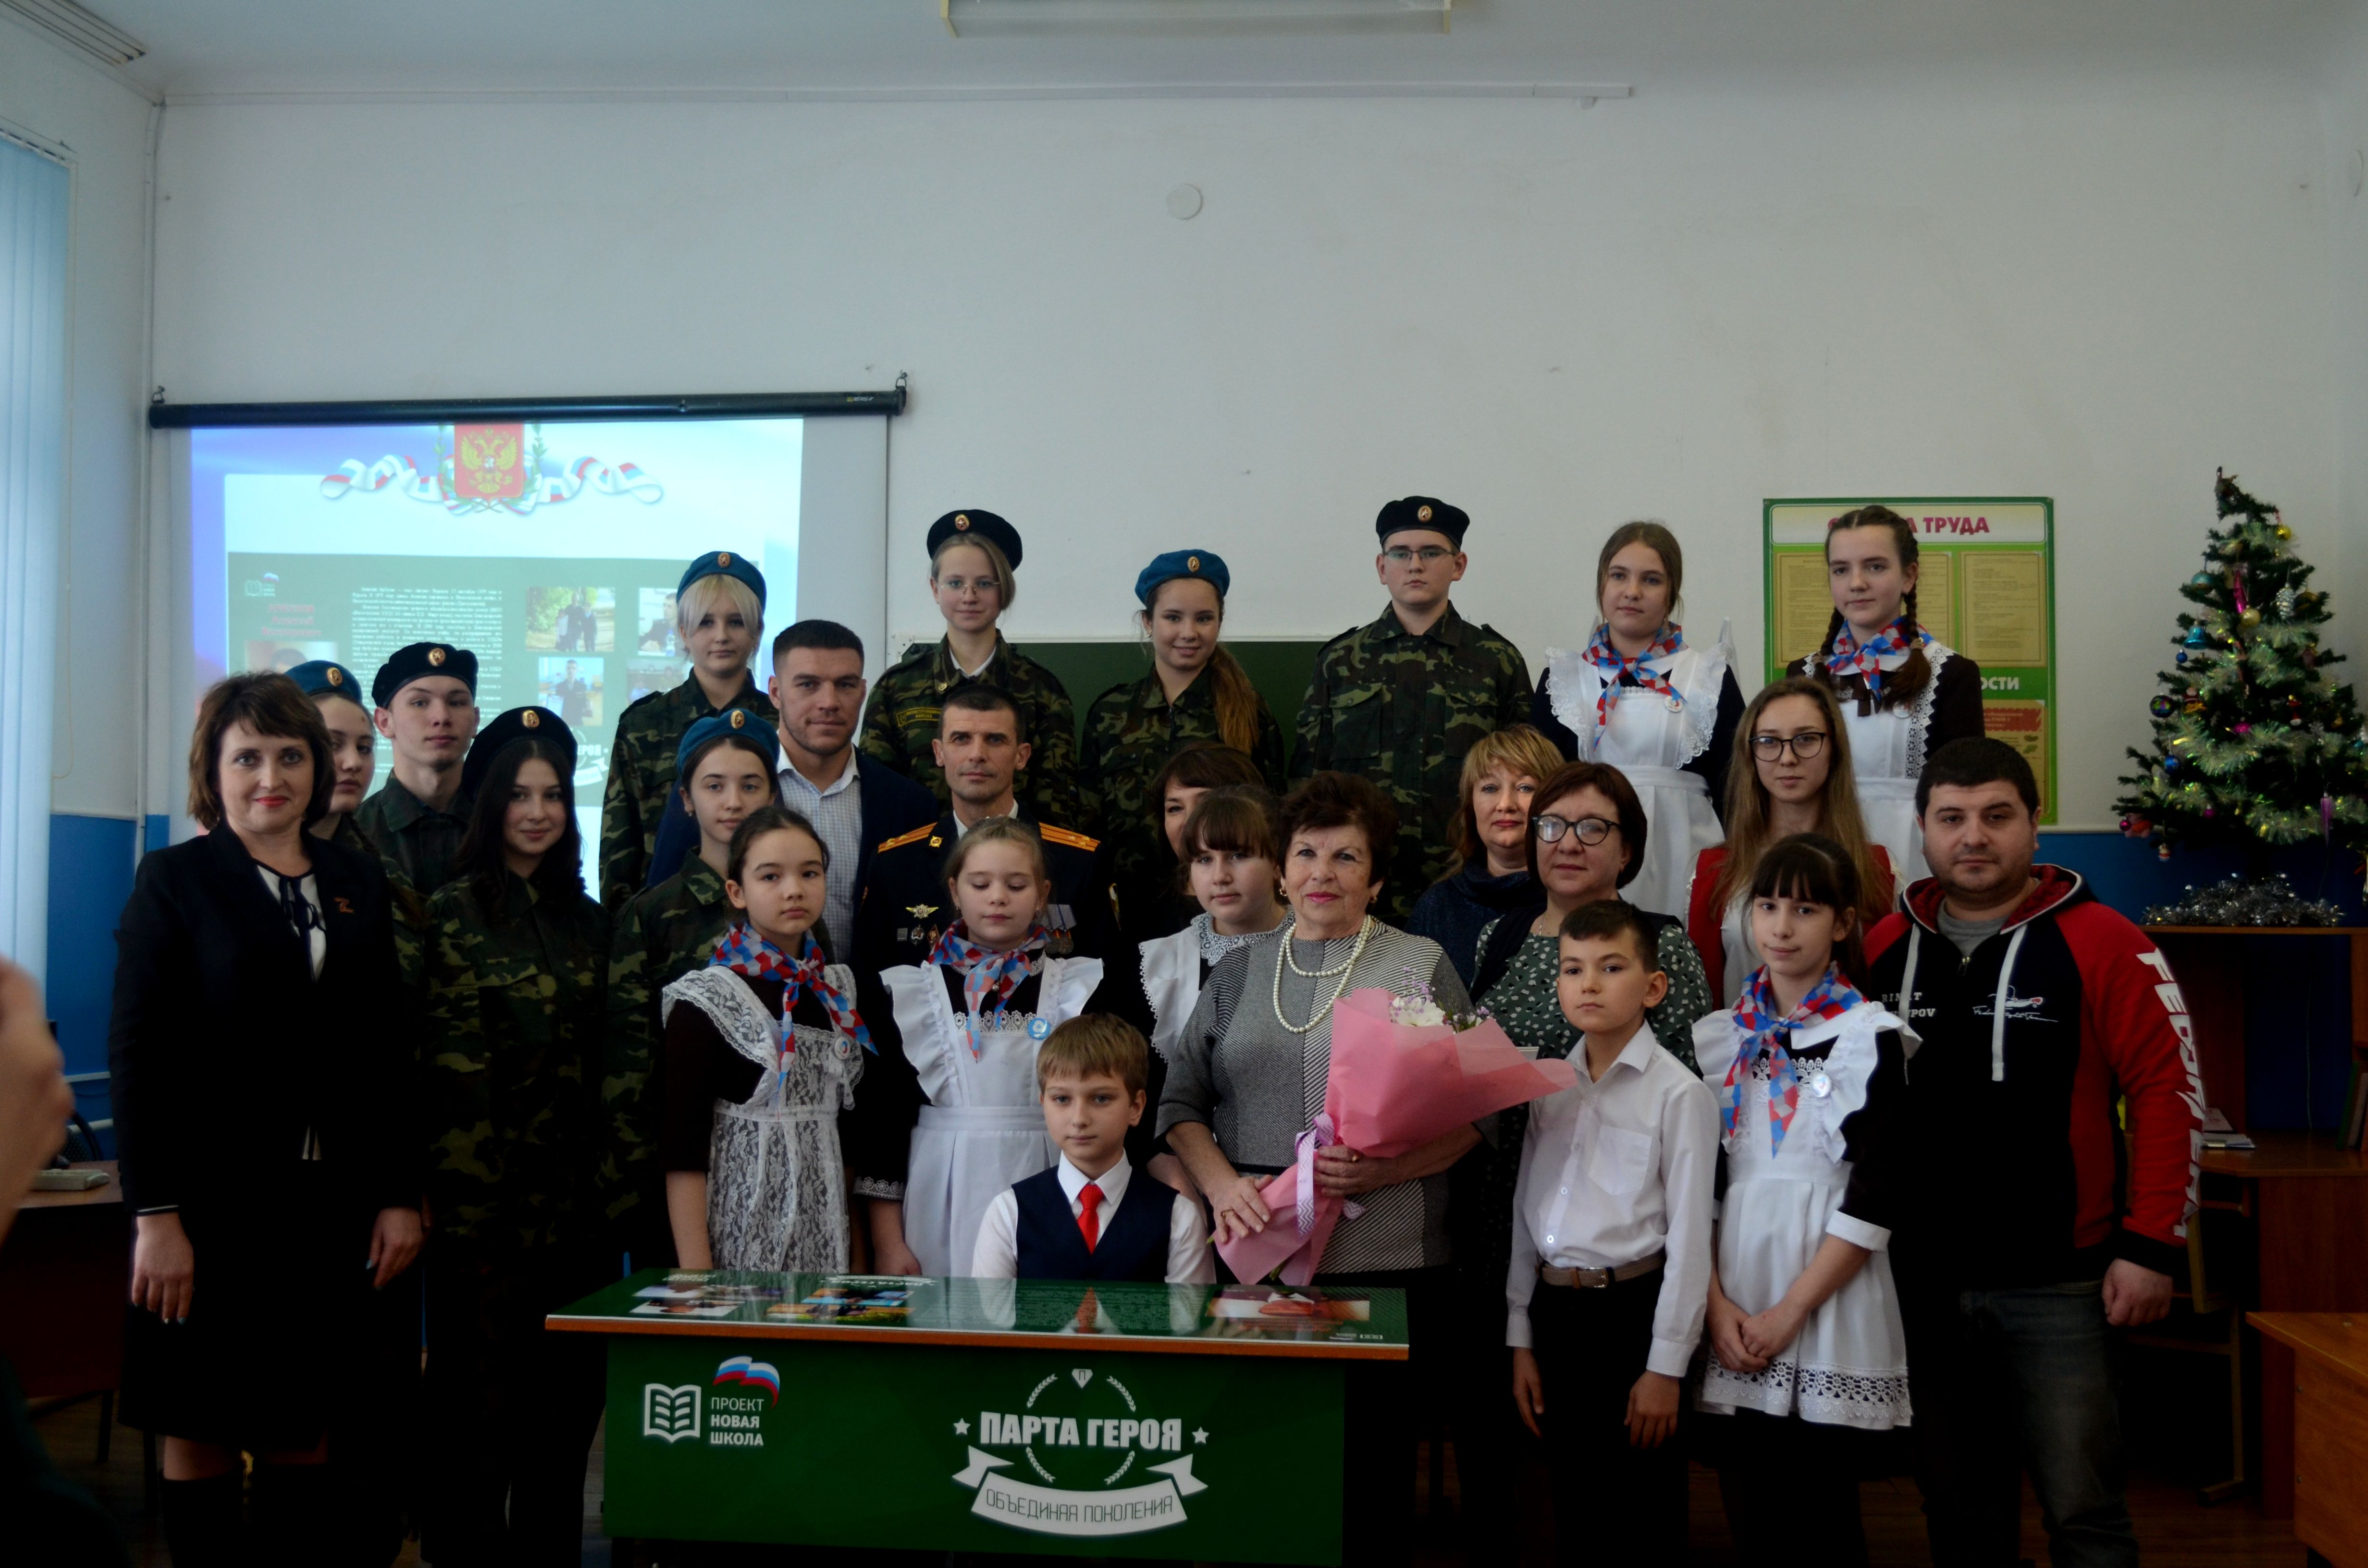 Сегодня в Ракитянской средней общеобразовательной школе №3 им. Н.Н. Федутенко появилась Парта Героя